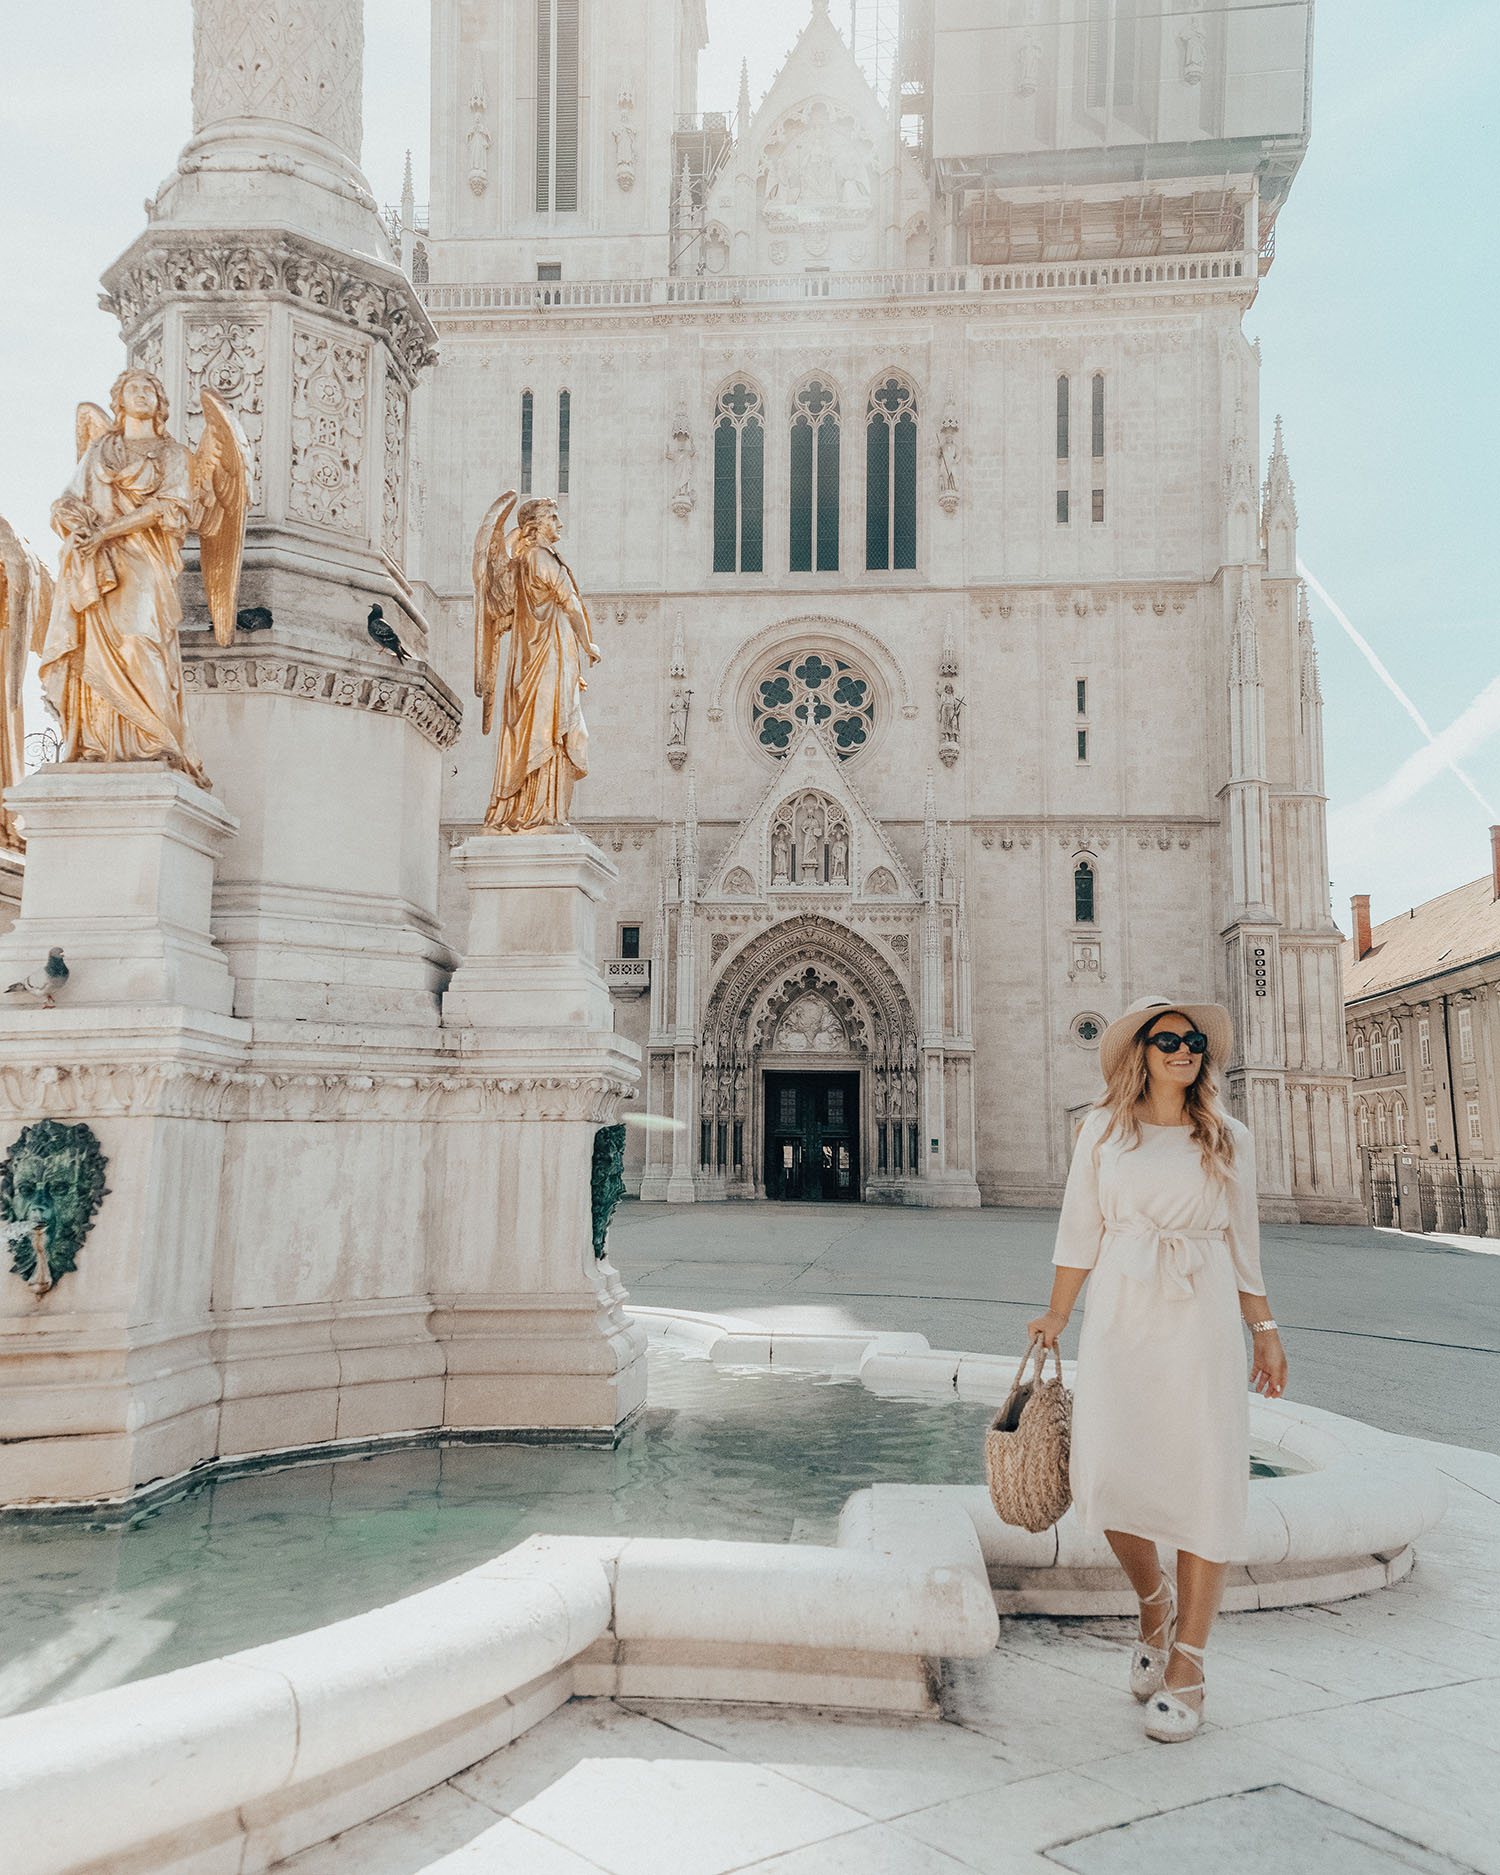 Best Instagram Spots in Zagreb, Croatia | Zagreb Cathedral